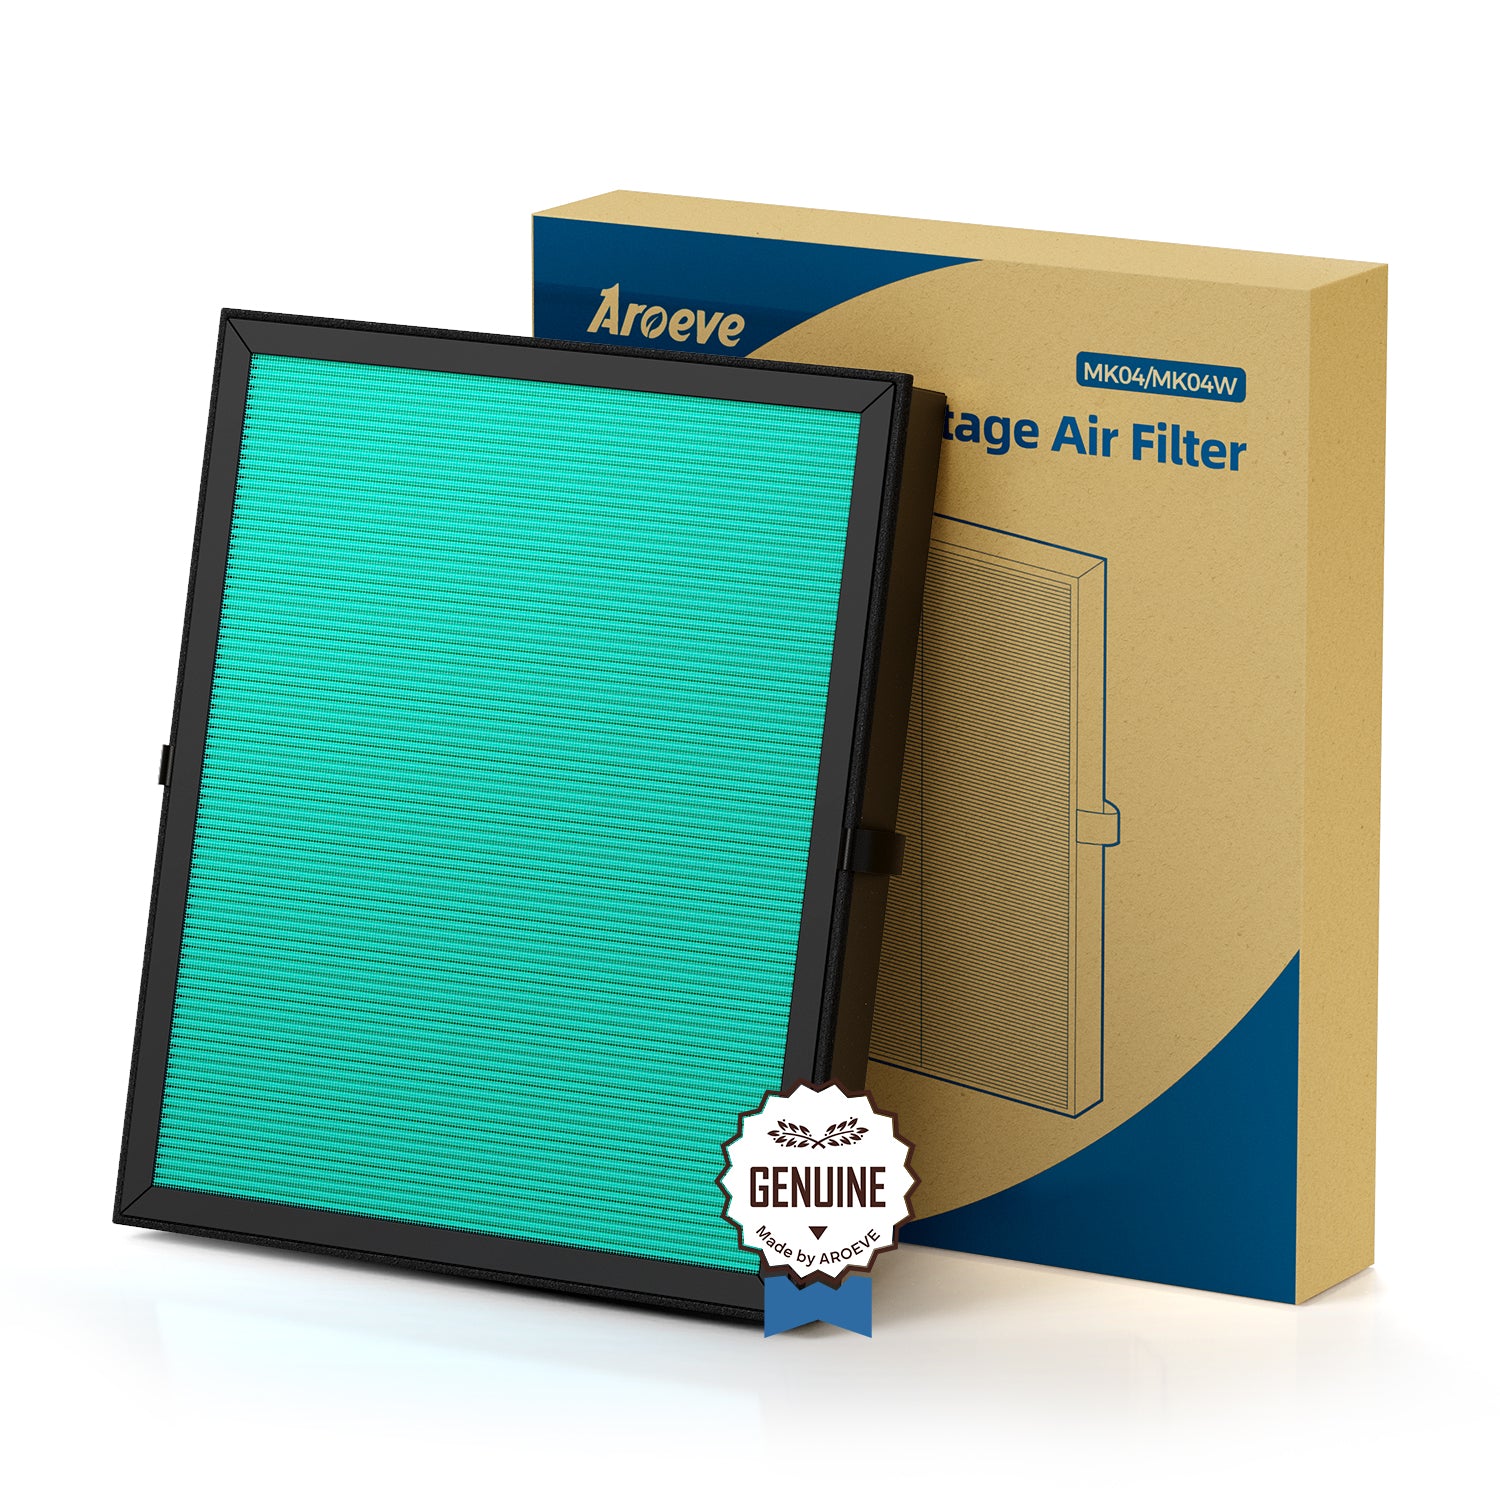 AROEVE Air Filter Replacement | MK04- Pet Dander Version